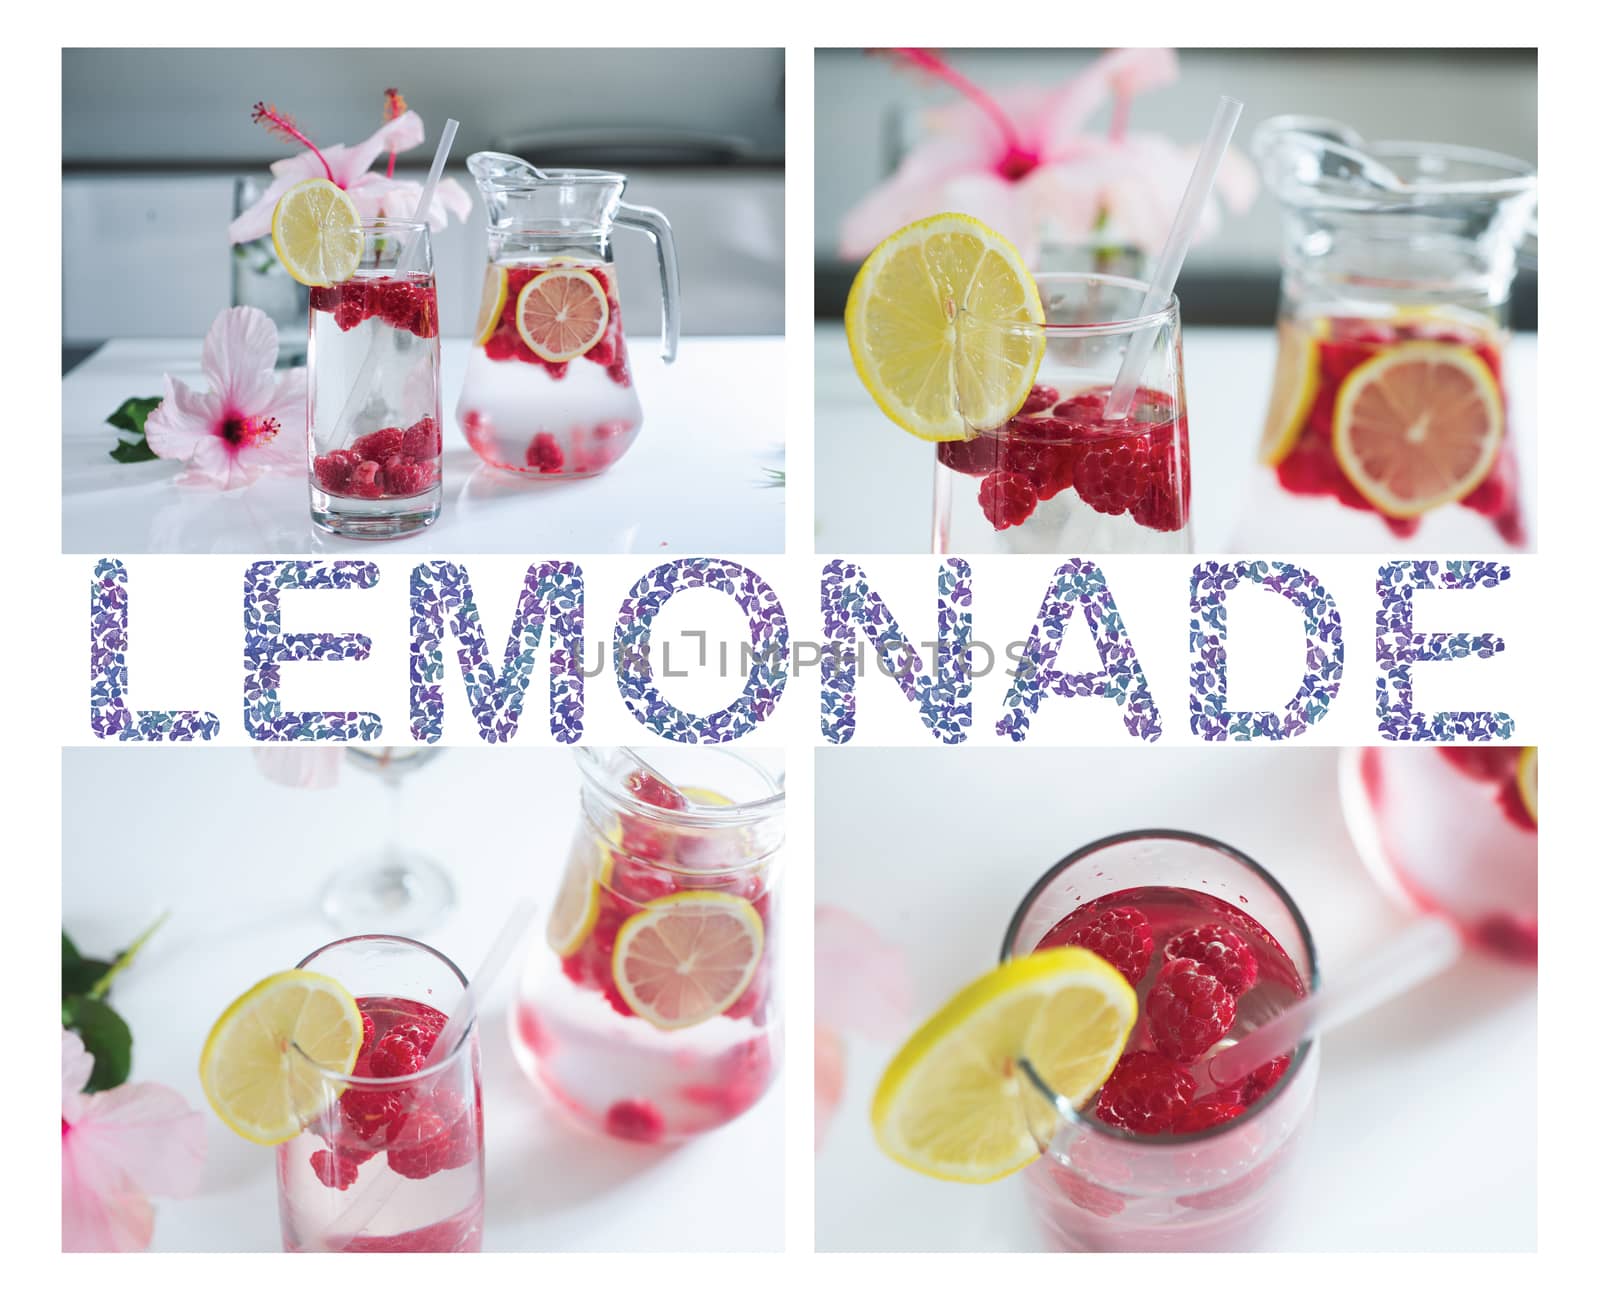 Tasty Lemonade with fresh raspberries and lemon by Margolana